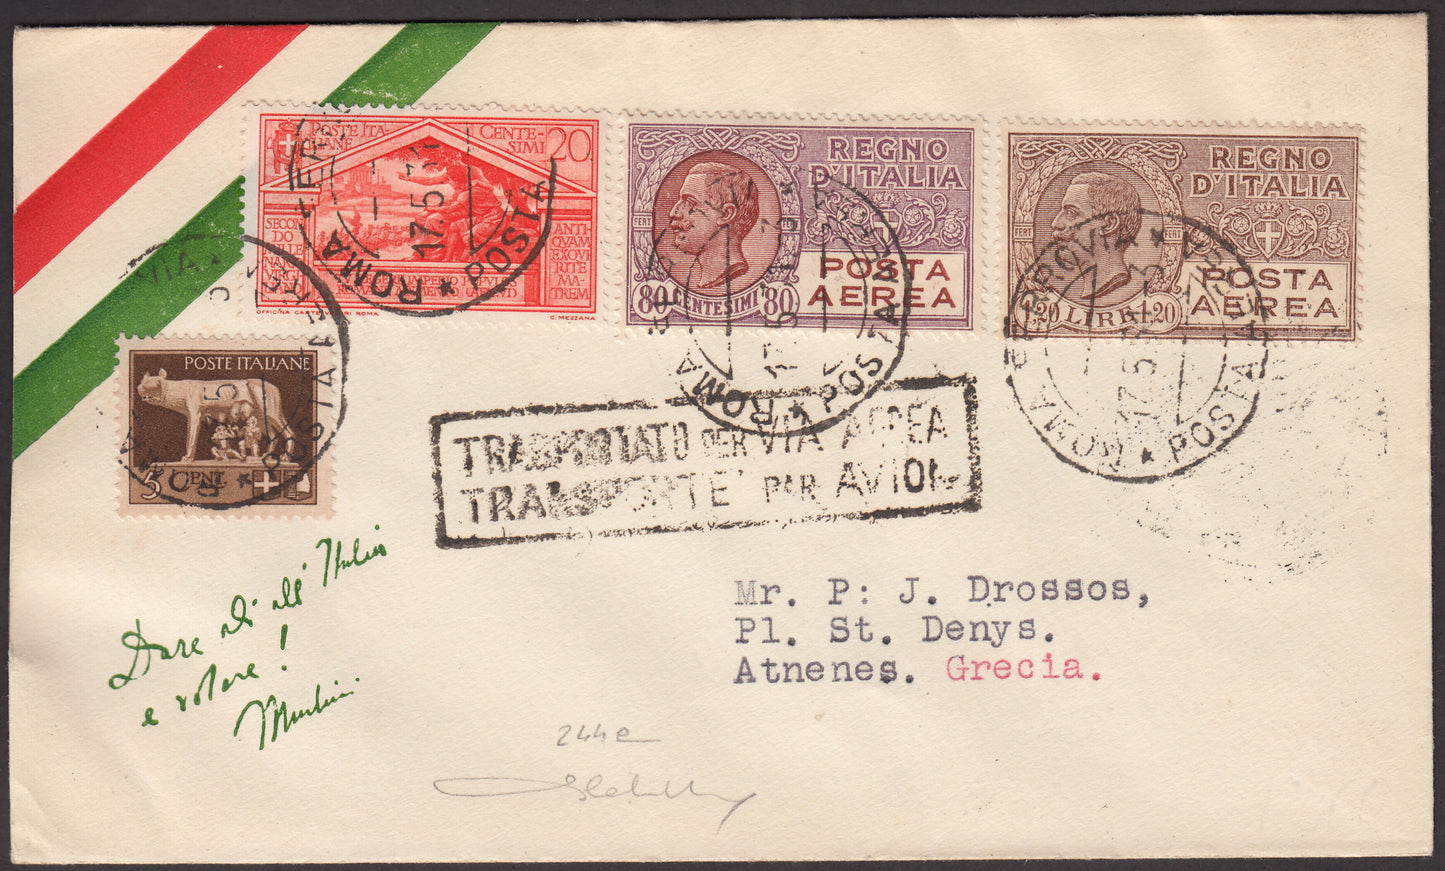 1931 - Primo volo Napoli - Atene 17/5/31 affrancata con Imperiale c. 5 bruno + Virgilio c. 20 arancio + P.A. c. 80 lilla e bruno rosso + L. 1,20 bruno (243 + 283 + PA 3A + 5)